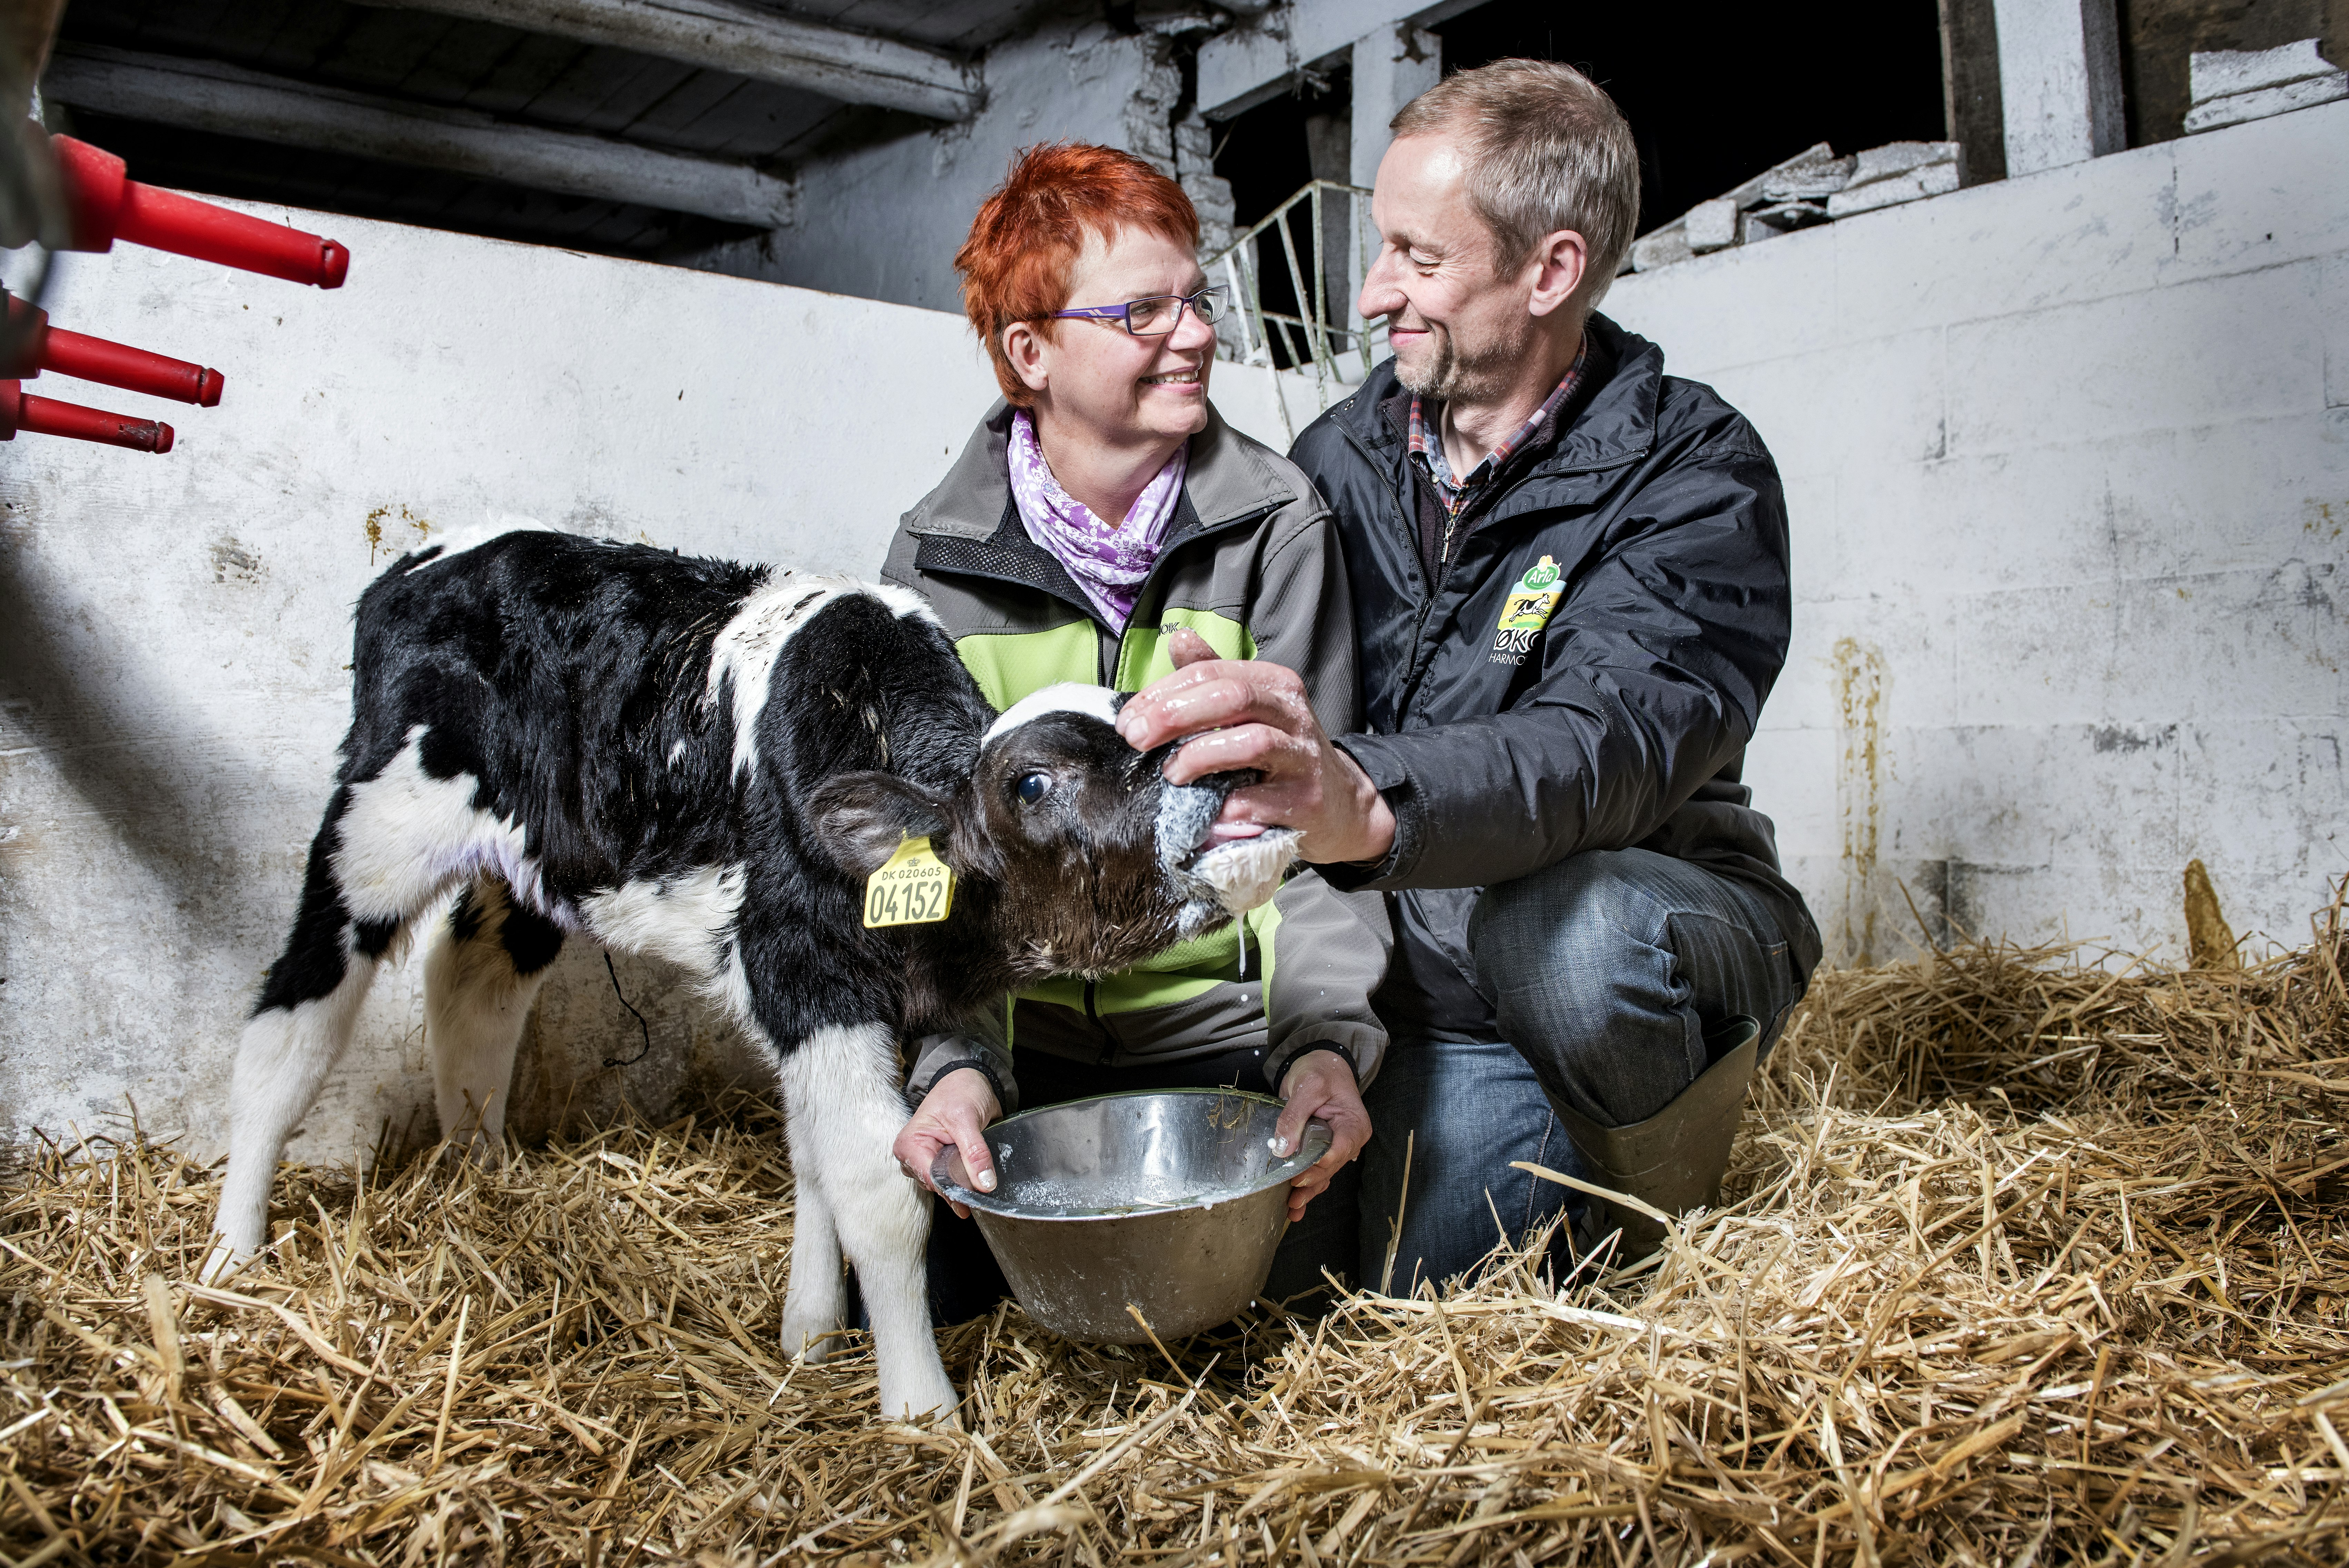 Landmand søger kærlighed: Ole-landmand og Gitte skal giftes.Foto: Maria Tuxen Hedegaard 